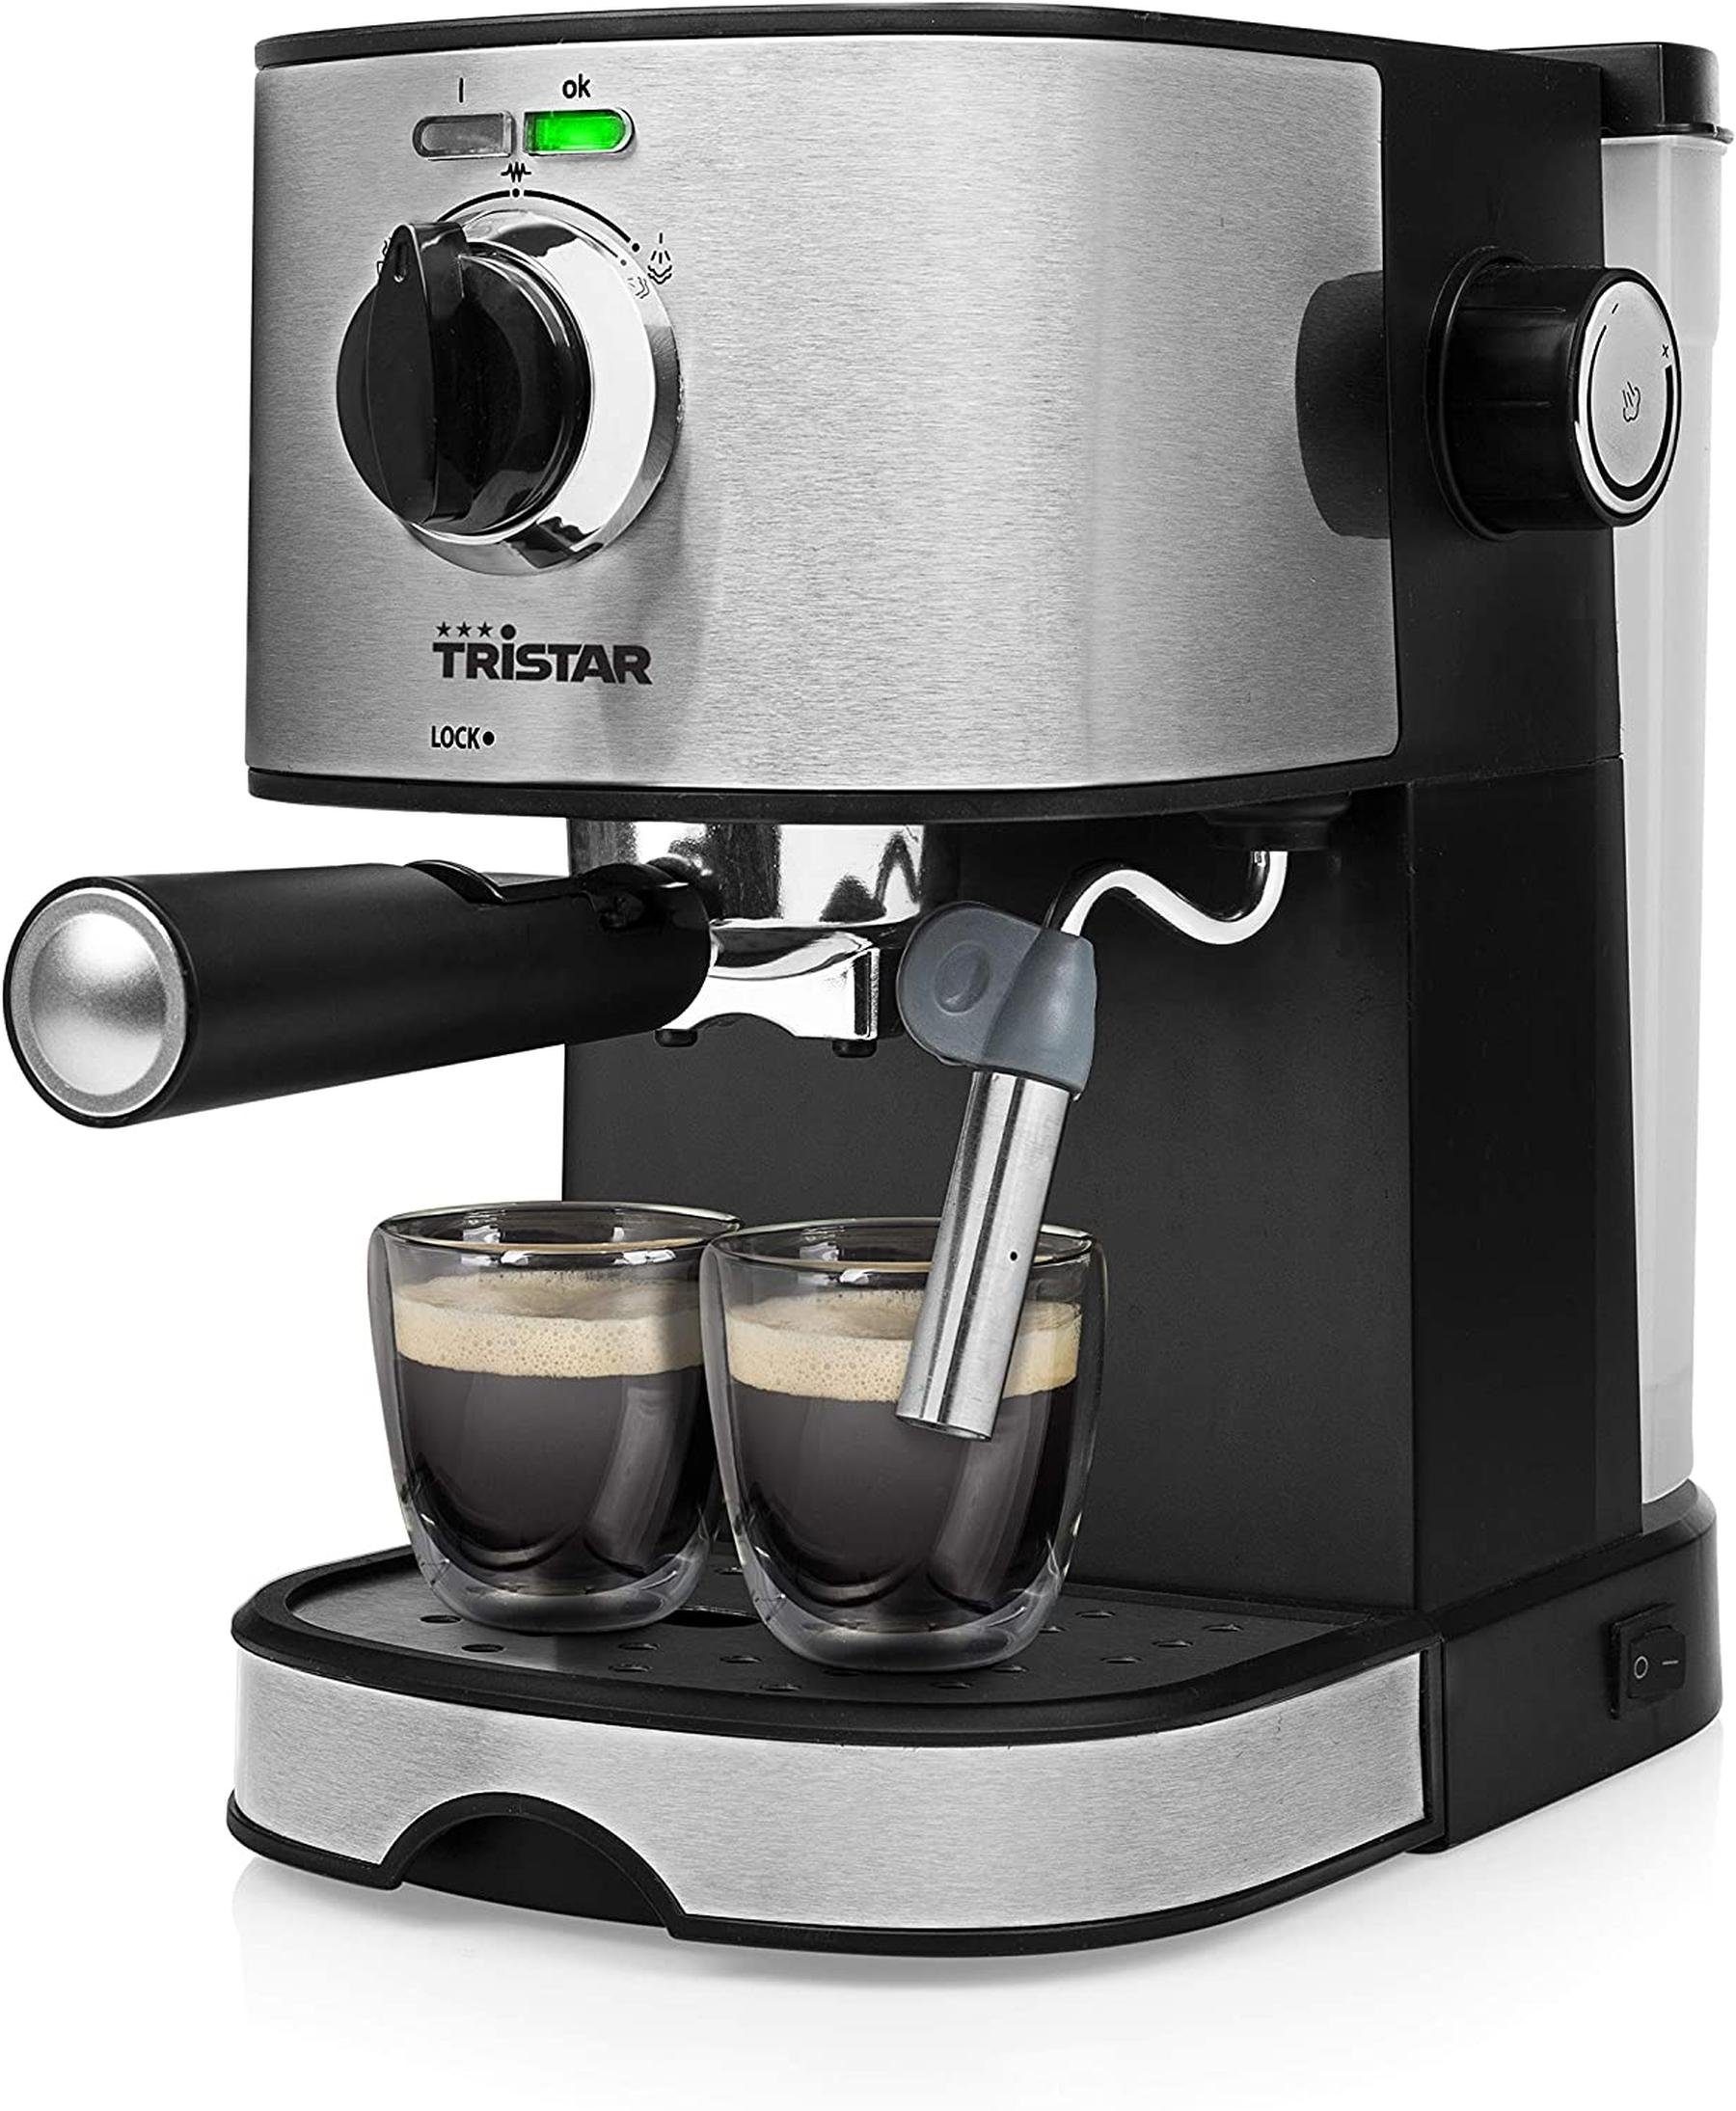 TZS First Austria Espressomaschine, für viele Kaffeespezialitäten, 0,25 L  Kanne & Messlöffel, Dampfdüse zum Milch aufschäumen, in Schwarz/Edelstahl